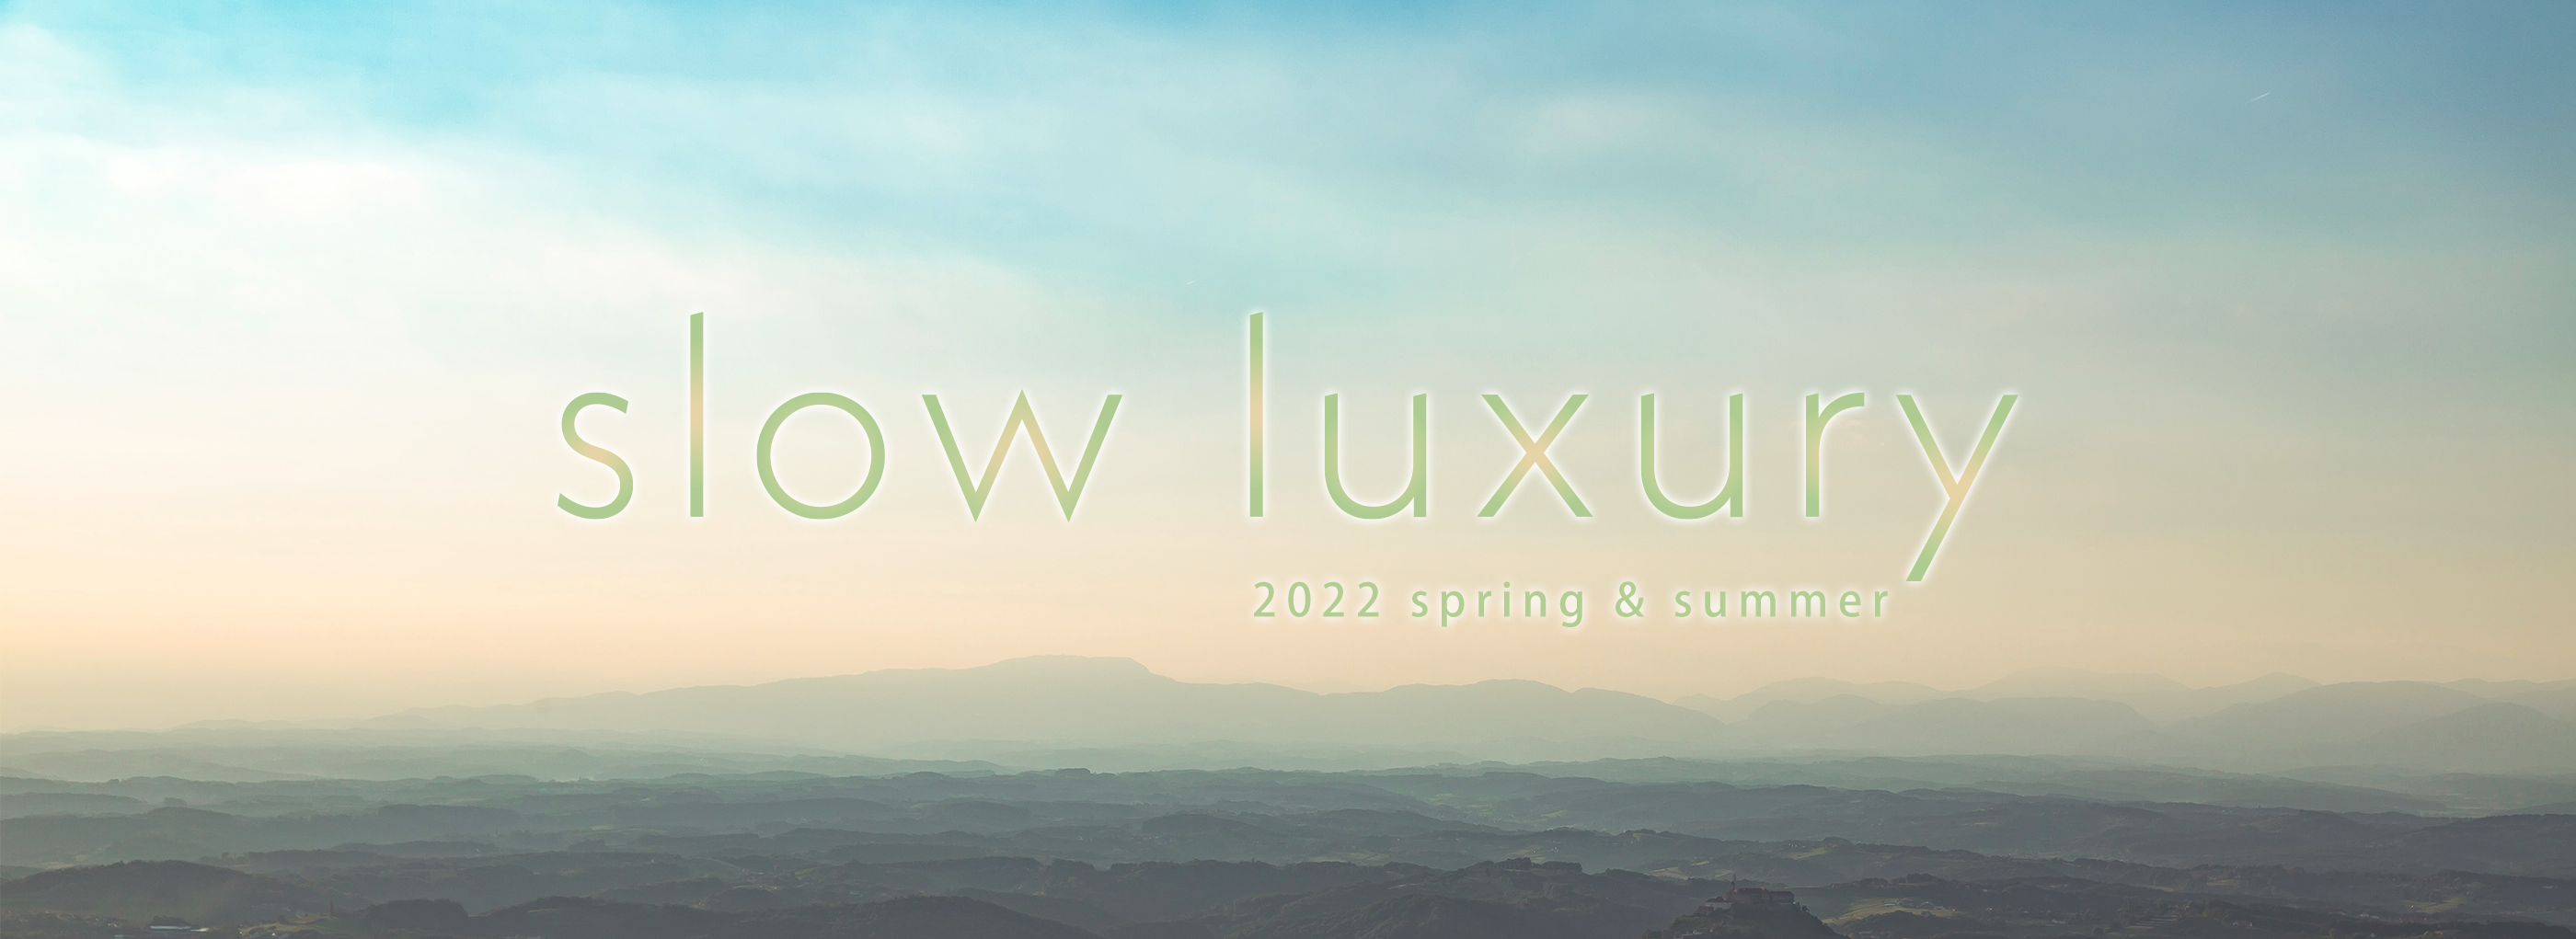 2022ss
slow luxry
2022春夏
ファッショントレンド